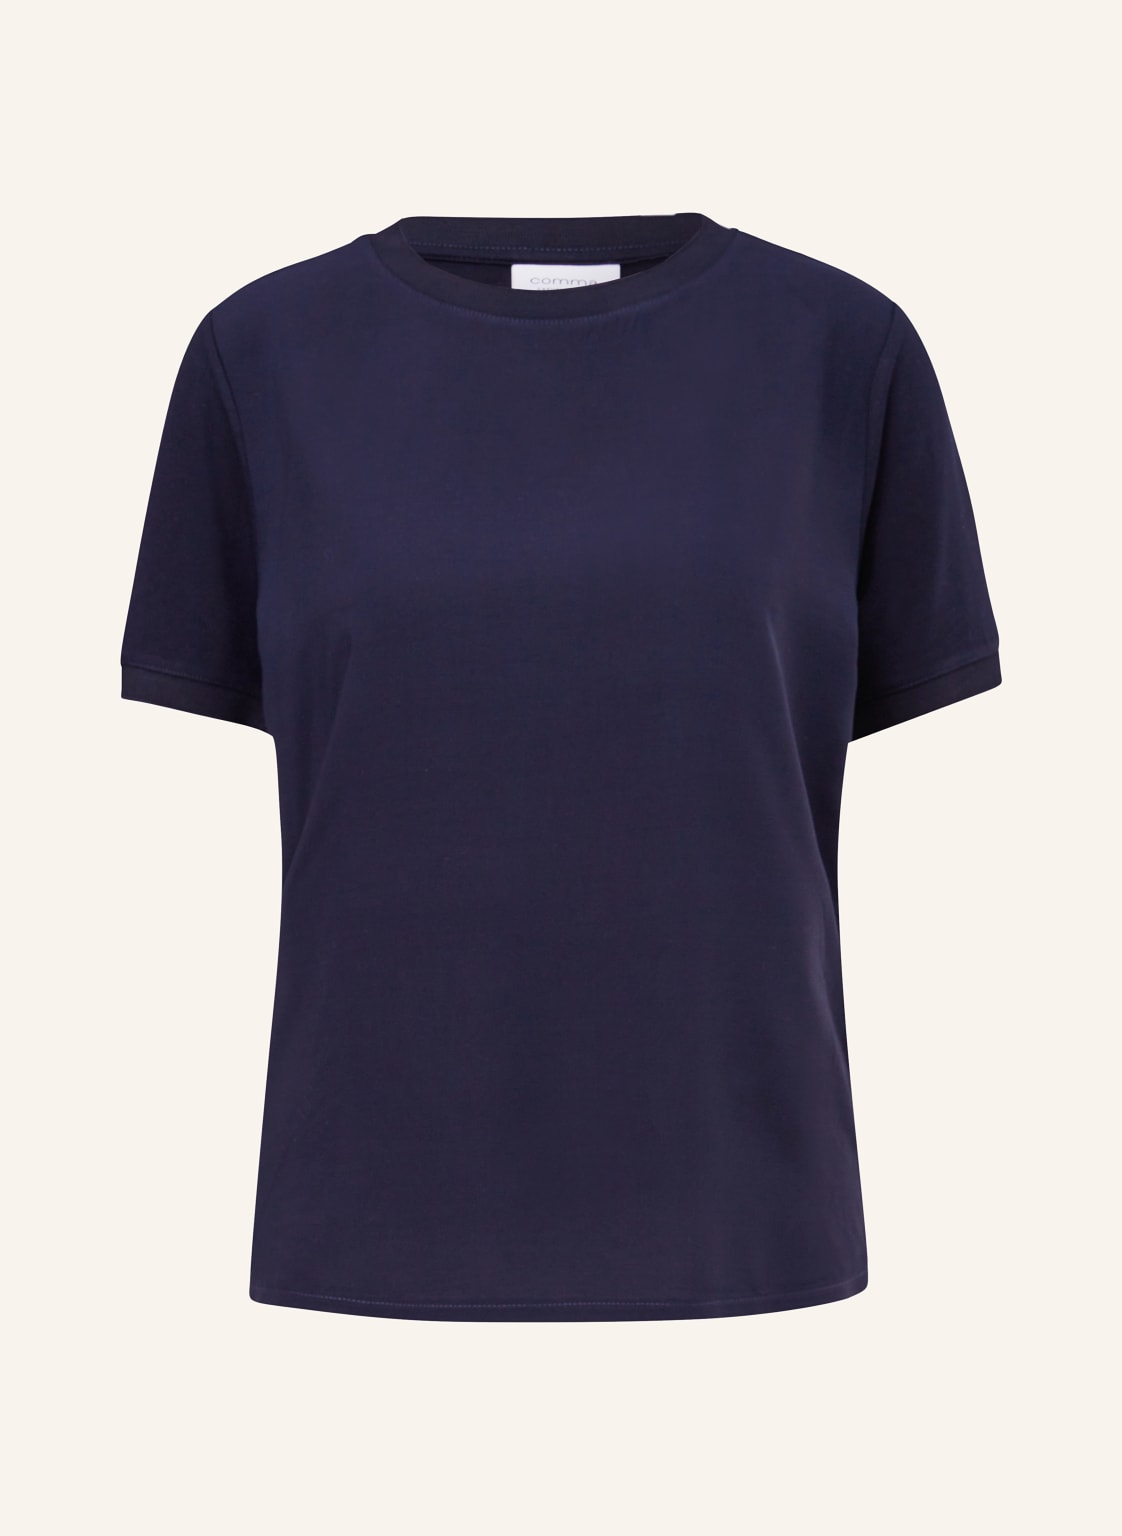 Comma Casual Identity T-Shirt blau von comma casual identity